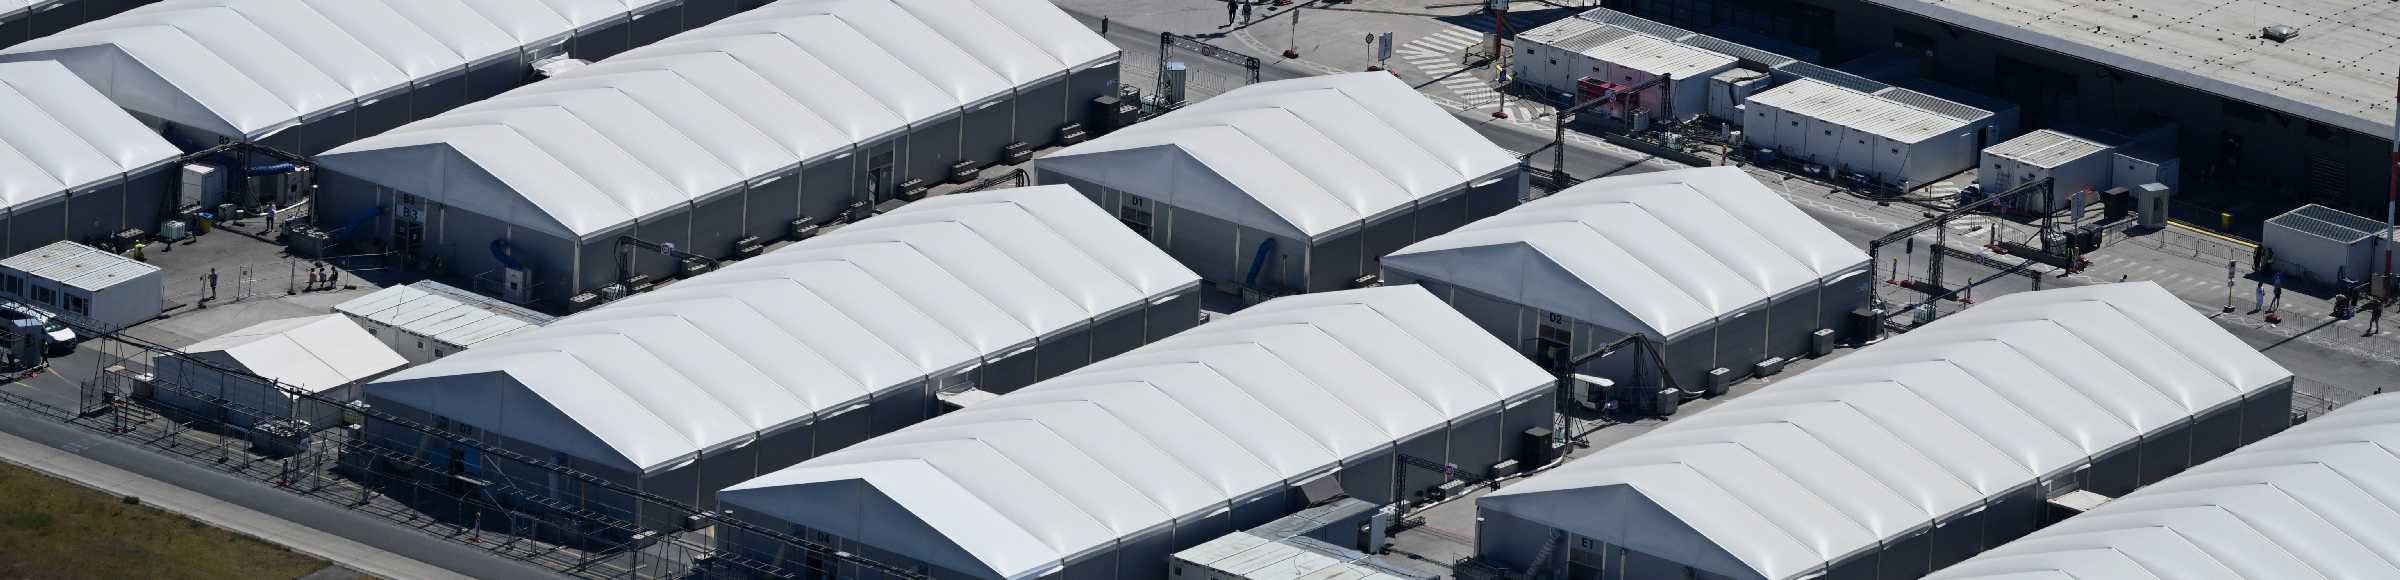 Flüchtlingsheim- und Asylunterkunfts- Zeltlager als Behelfsunterkunft 